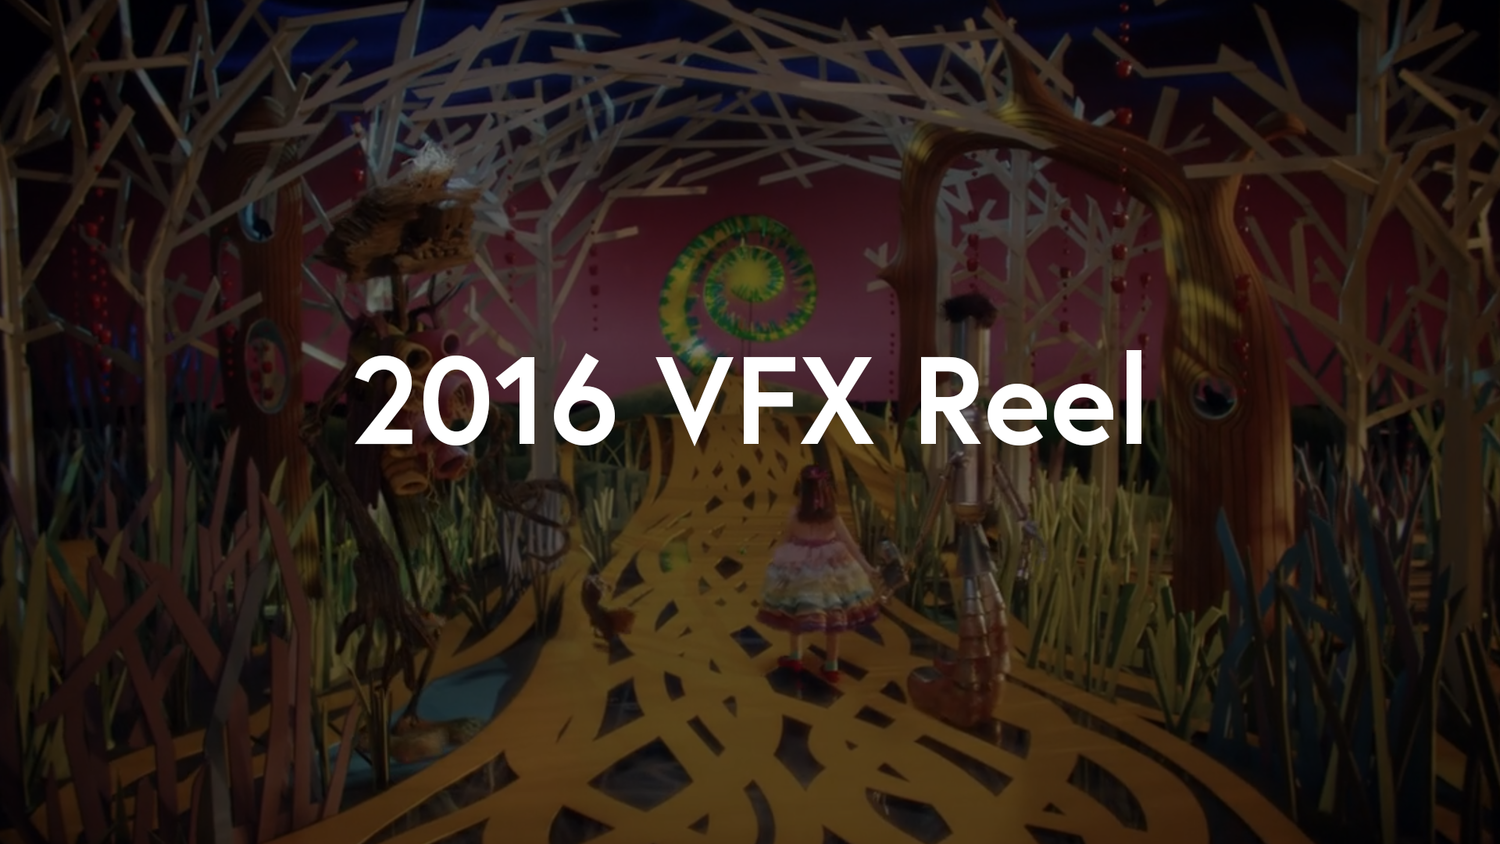 2016 VFX Reel